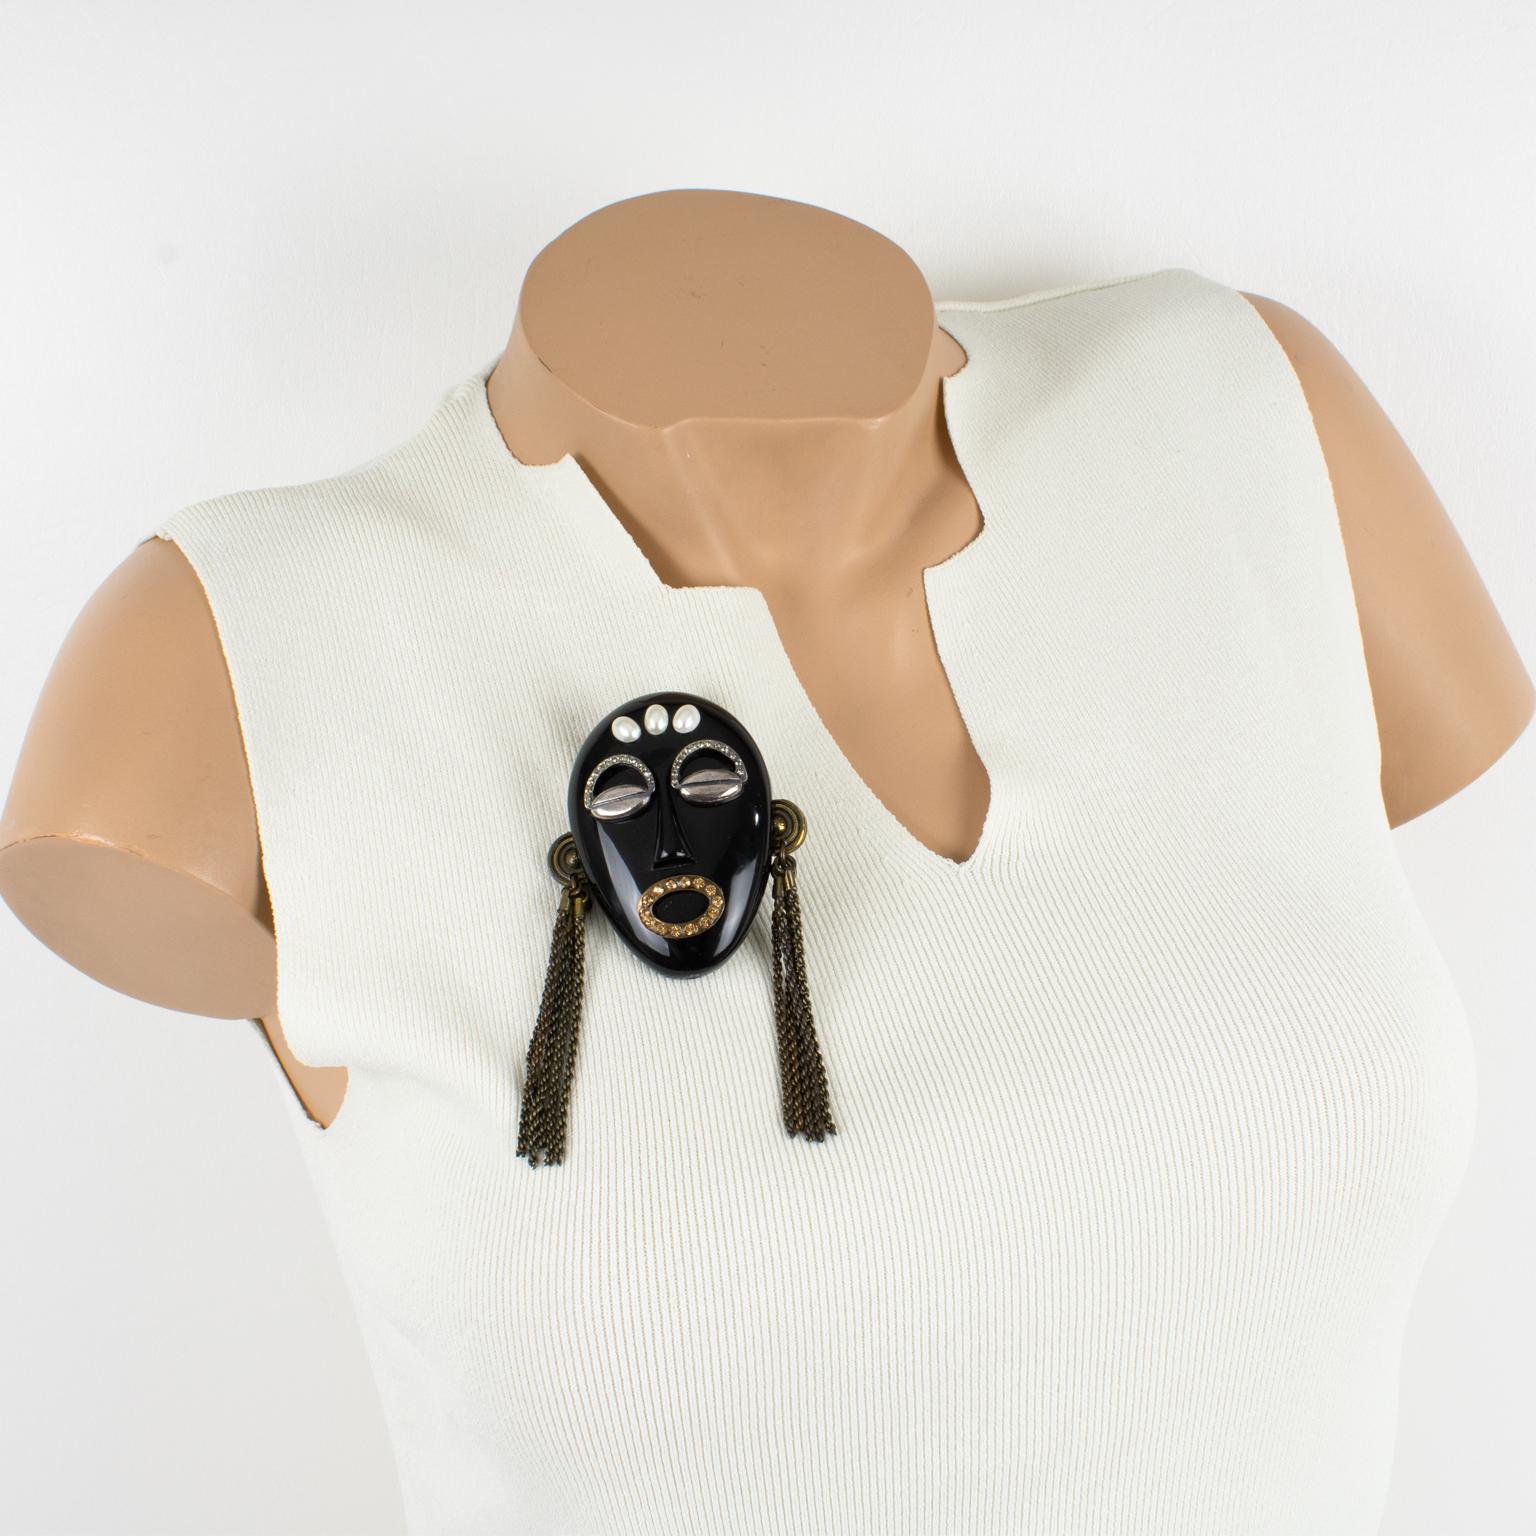 Il s'agit d'une rare broche iconique de Missoni Italy conçue pour leur collection de bijoux de 1991. L'épingle représente un masque tribal surdimensionné en résine noire, orné d'yeux en grain de café argentés et de sourcils en strass. La bouche est